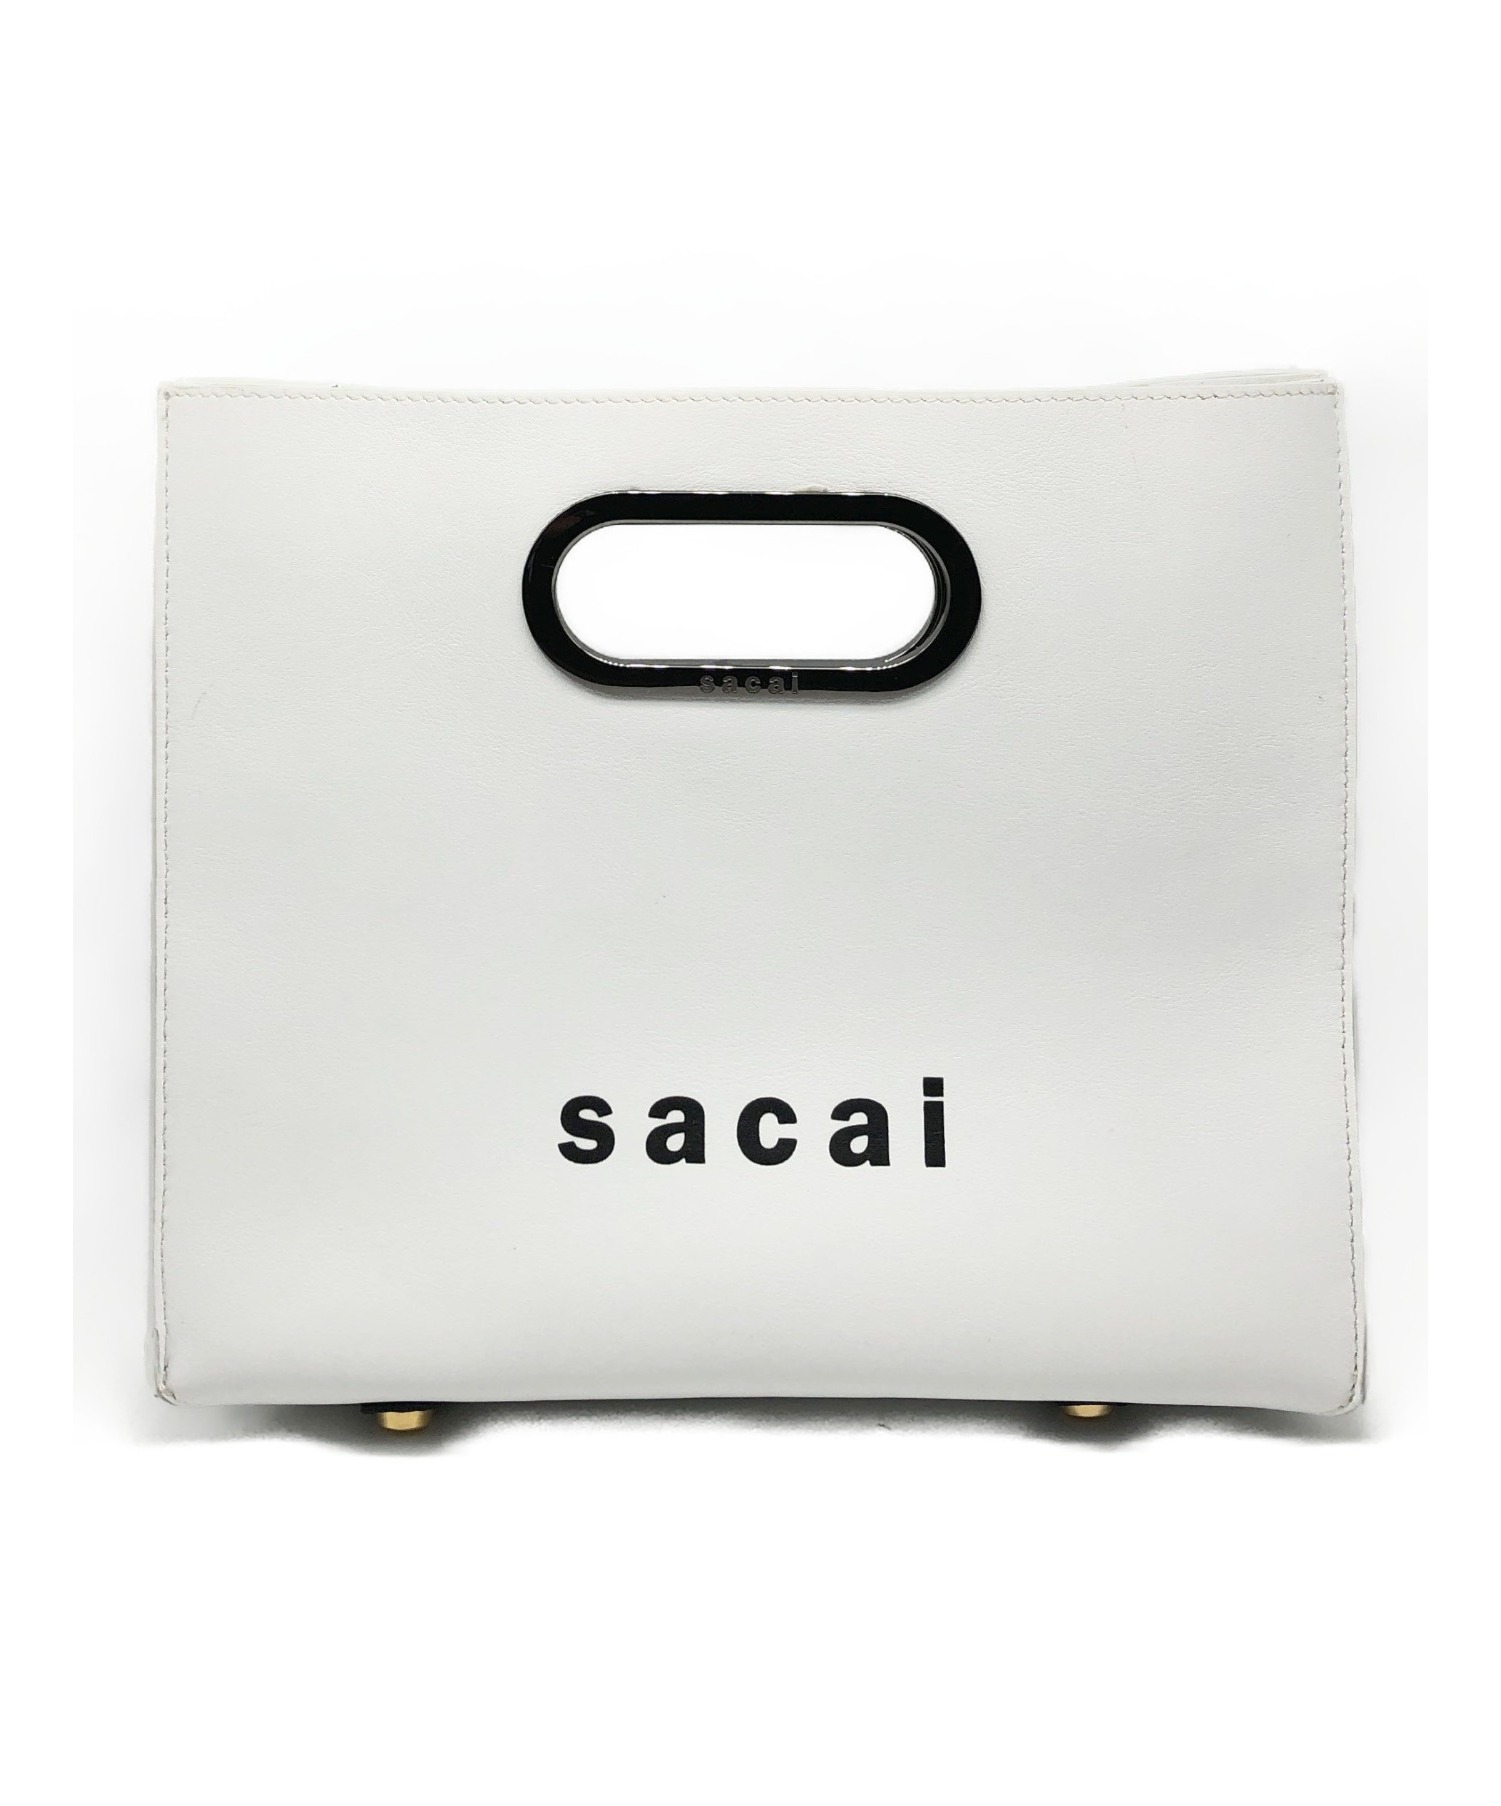 sacai (サカイ) ロゴハンドバッグ ホワイト サイズ:-